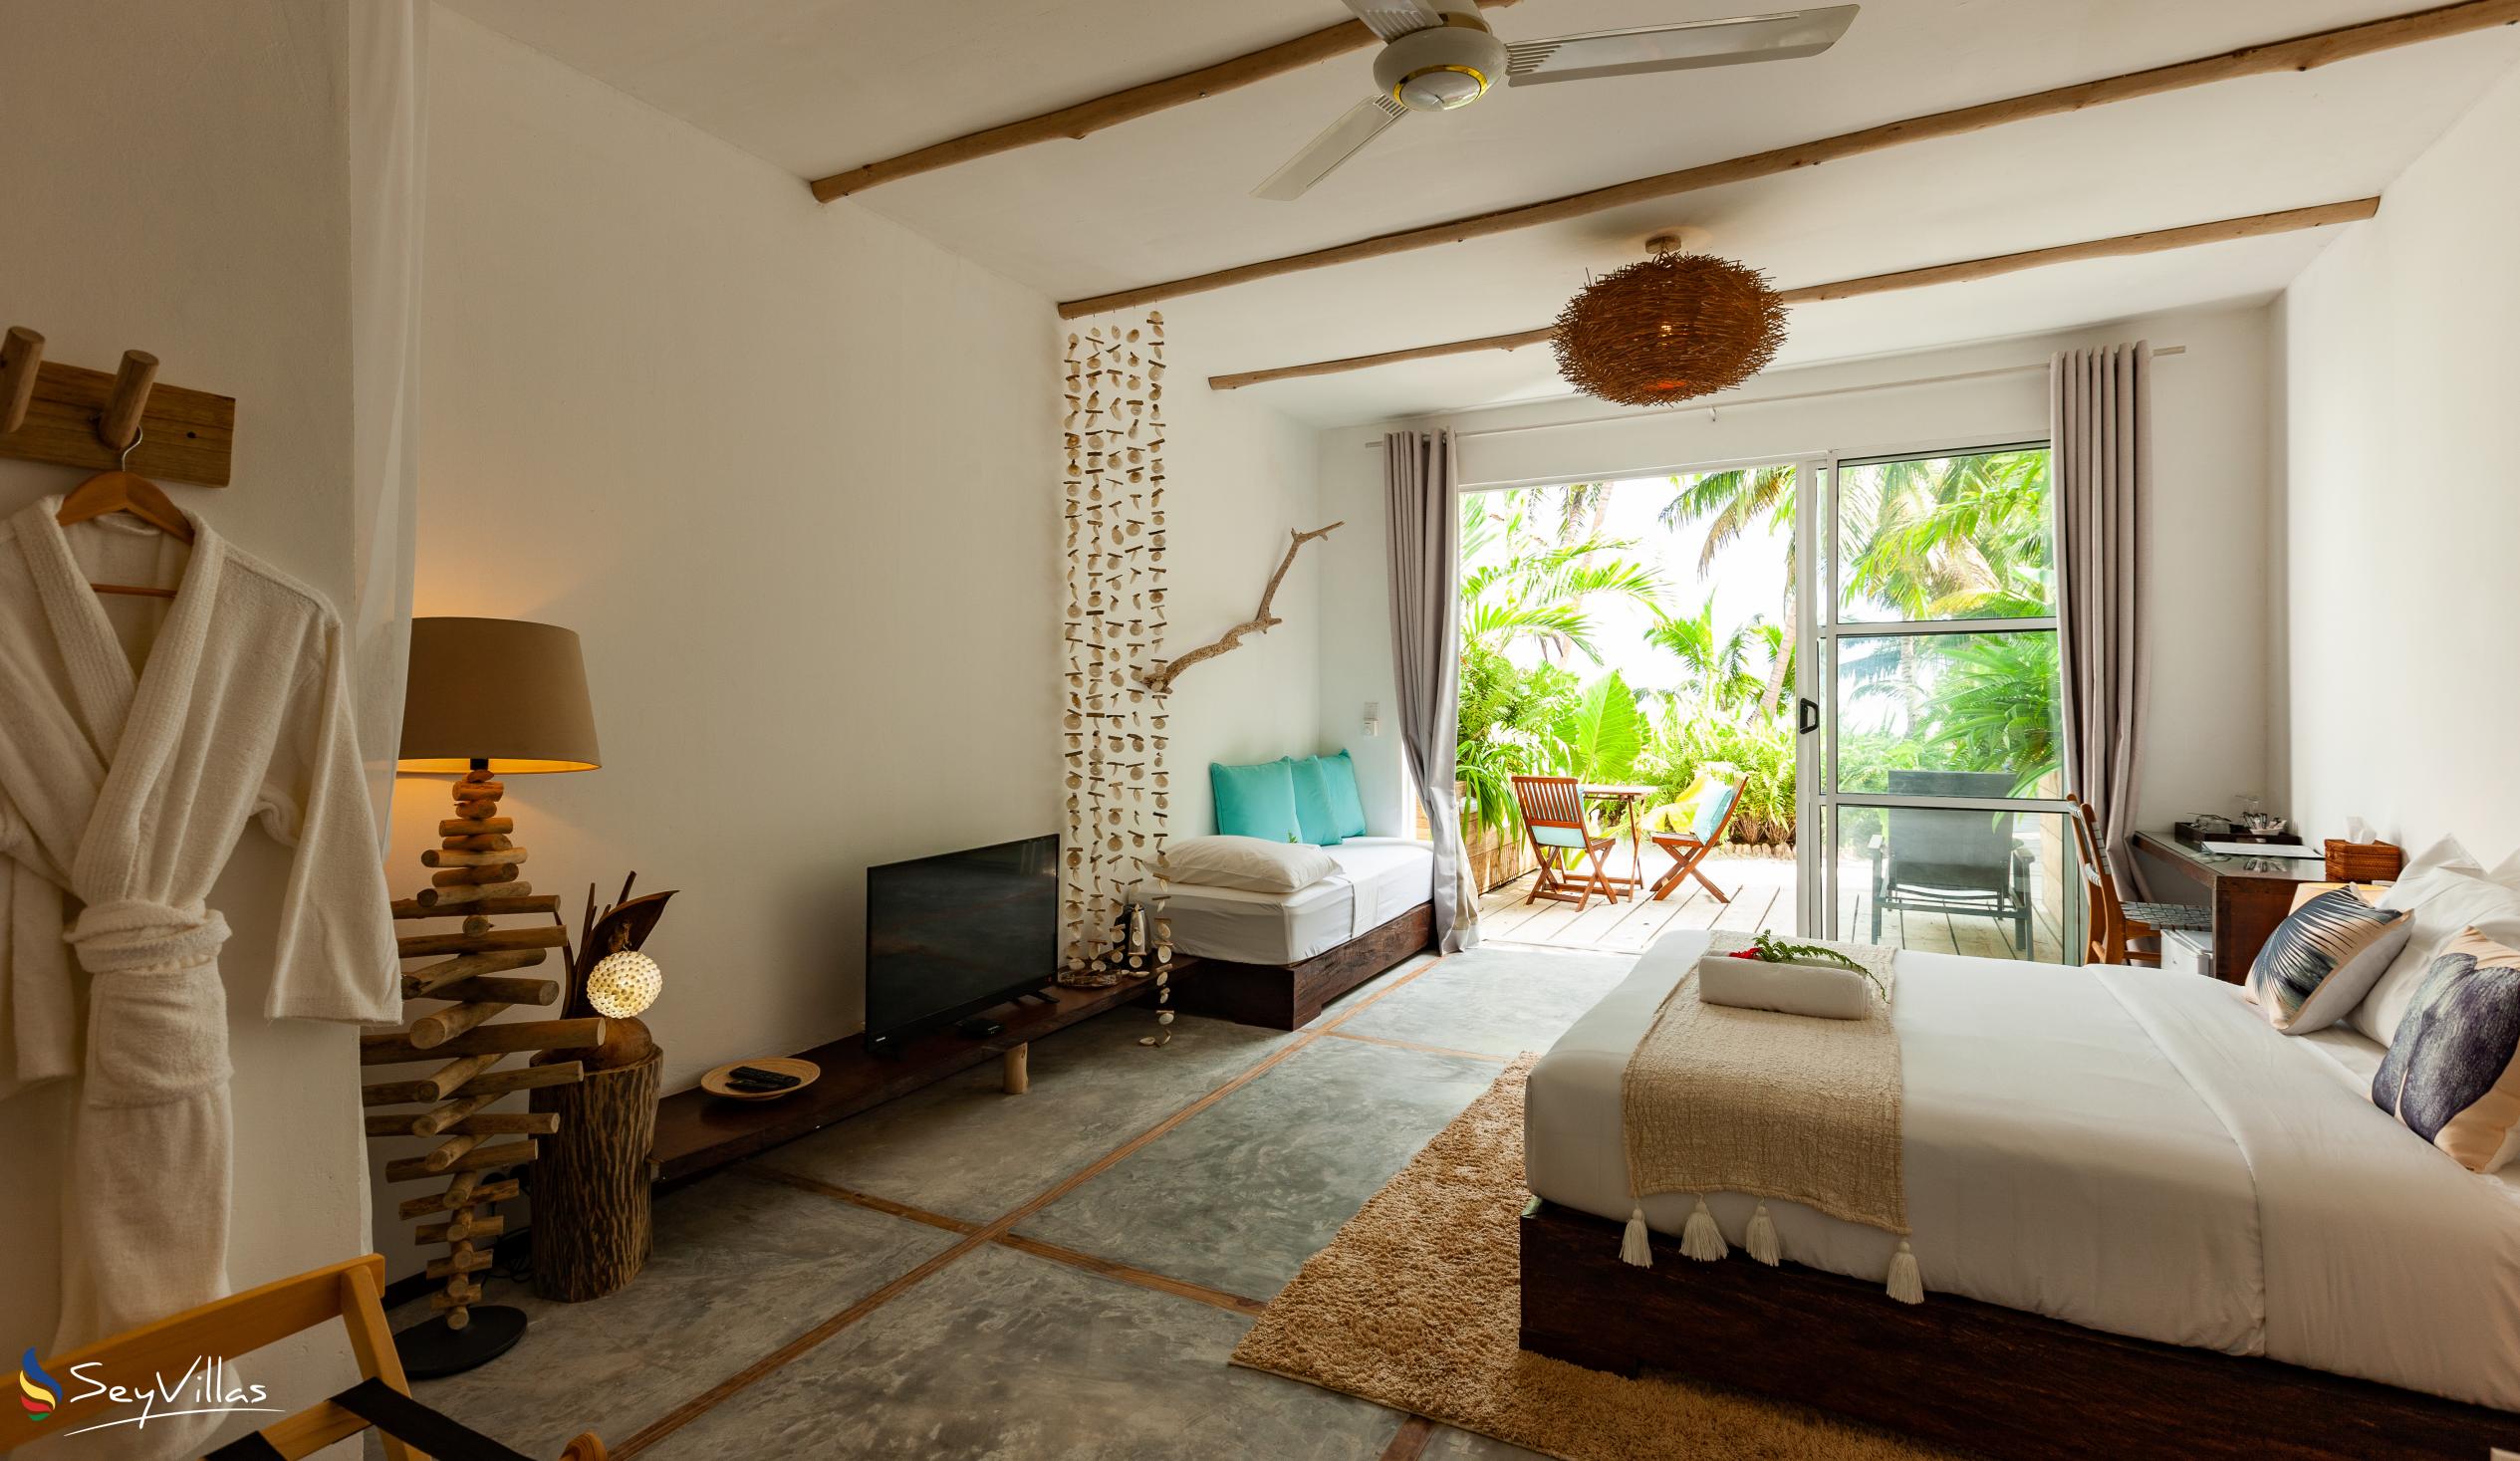 Foto 129: Bliss Hotel Praslin - Beach House - Chambre Beach Supérieure - Praslin (Seychelles)